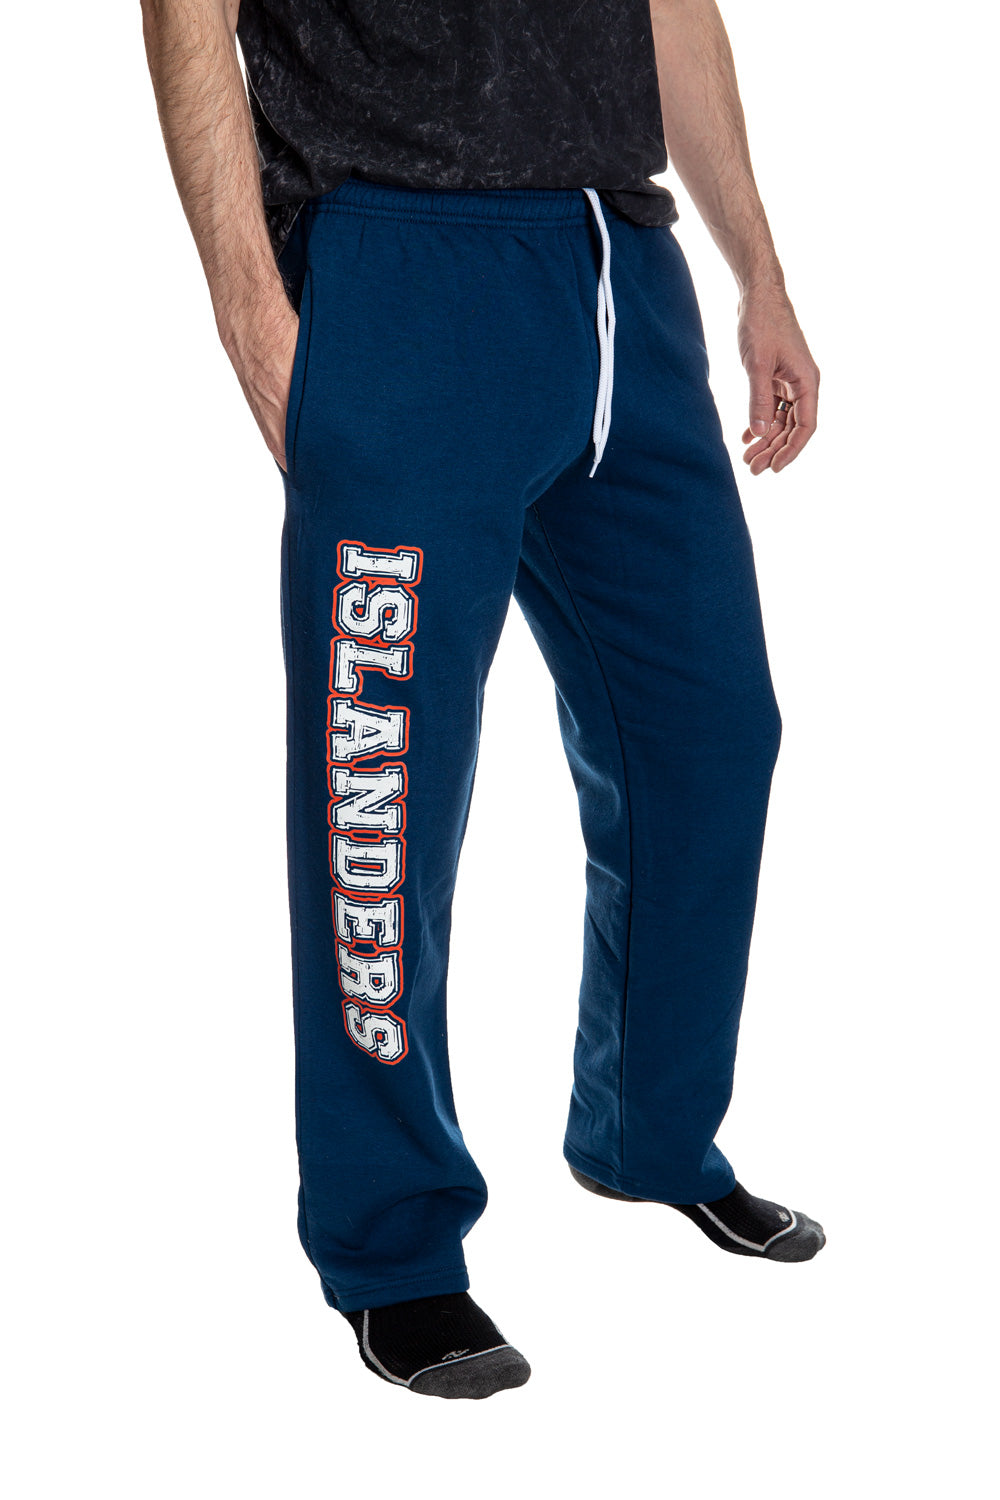 New York Islanders Premium Fleece Sweatpants Side View of Islanders Print.